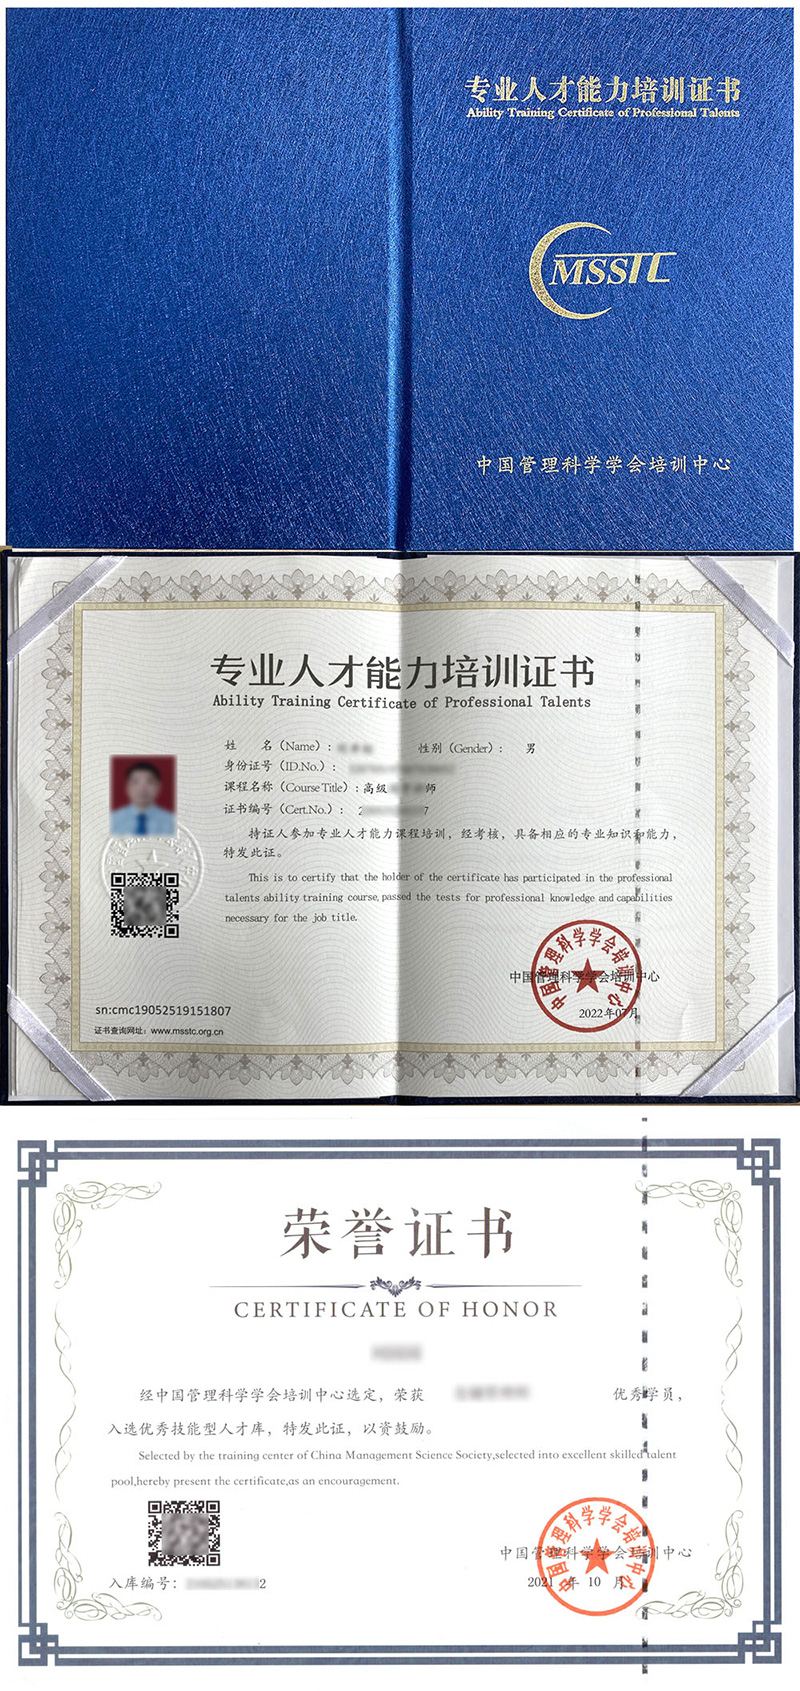 中国管理科学学会培训中心 专业人才能力培训证书 单证员证证书样本